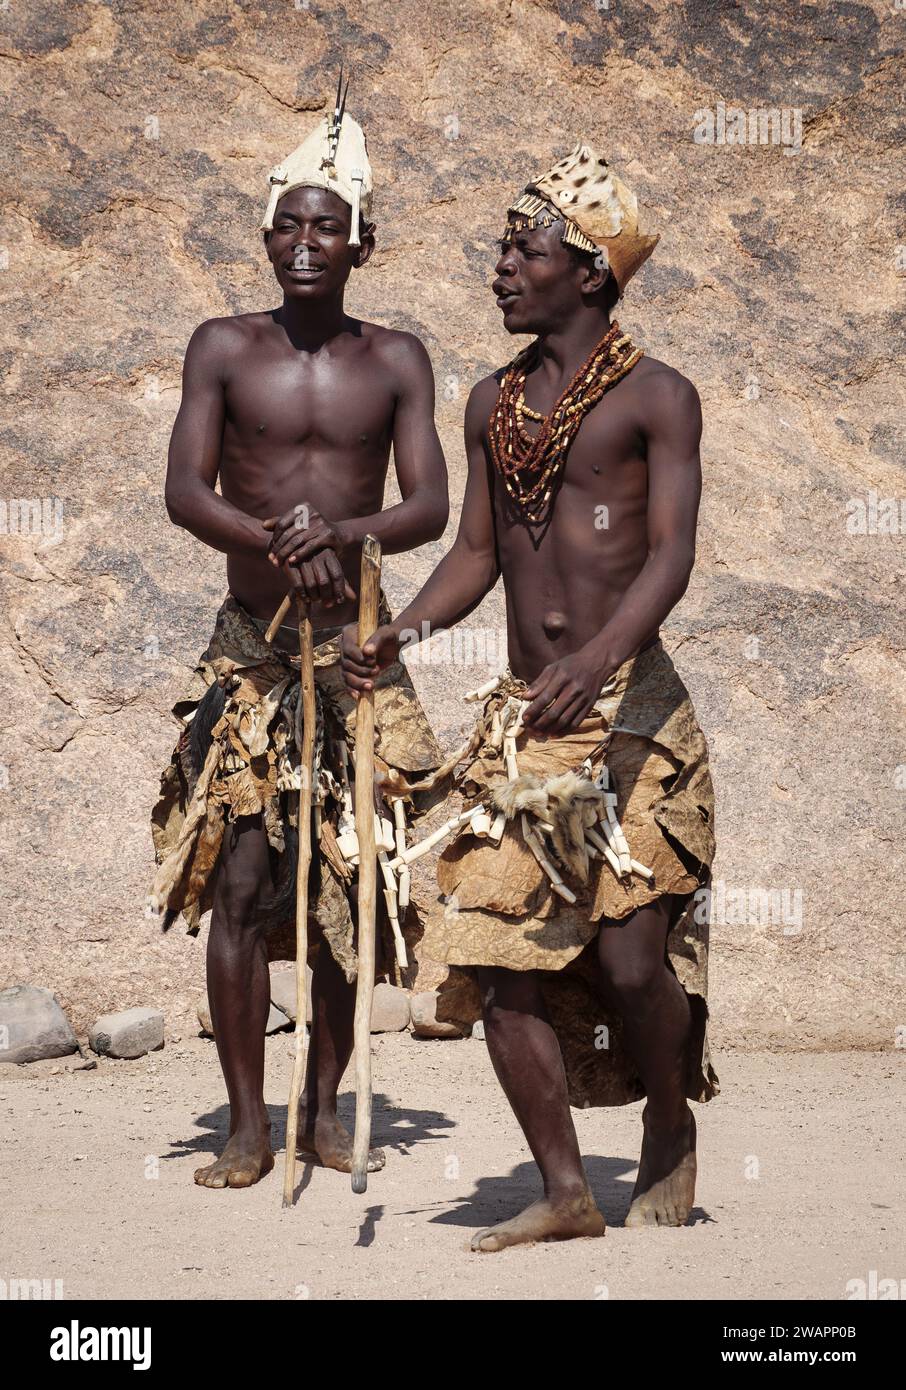 DAMARALAND, NAMIBIE - 17 septembre 2021 : deux chamans de la tribu Damara dans des vêtements traditionnels de peau et d'os d'animaux montrant la danse rituelle en L. Banque D'Images